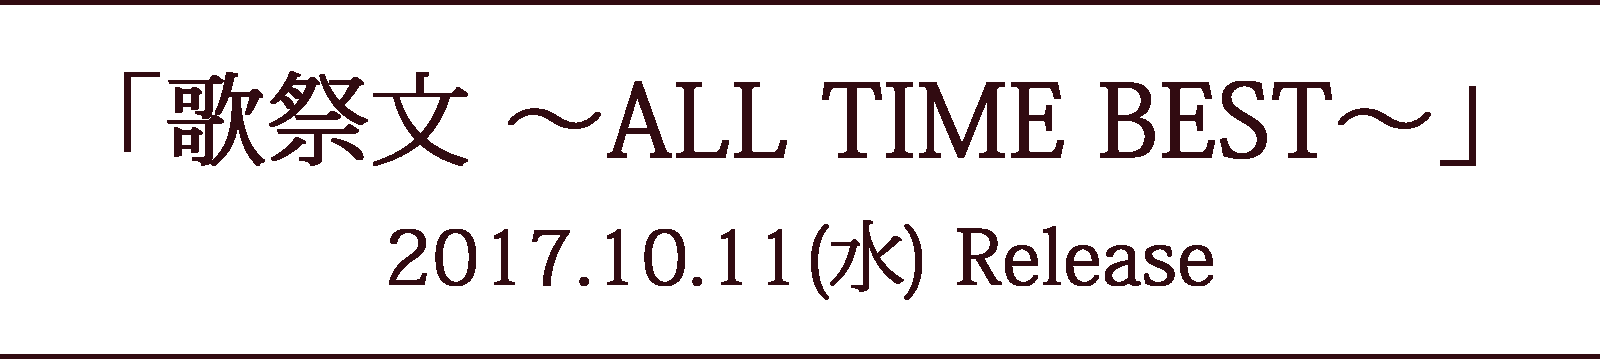 歌祭文 〜ALL TIME BEST〜 2017.10.17(水) Release